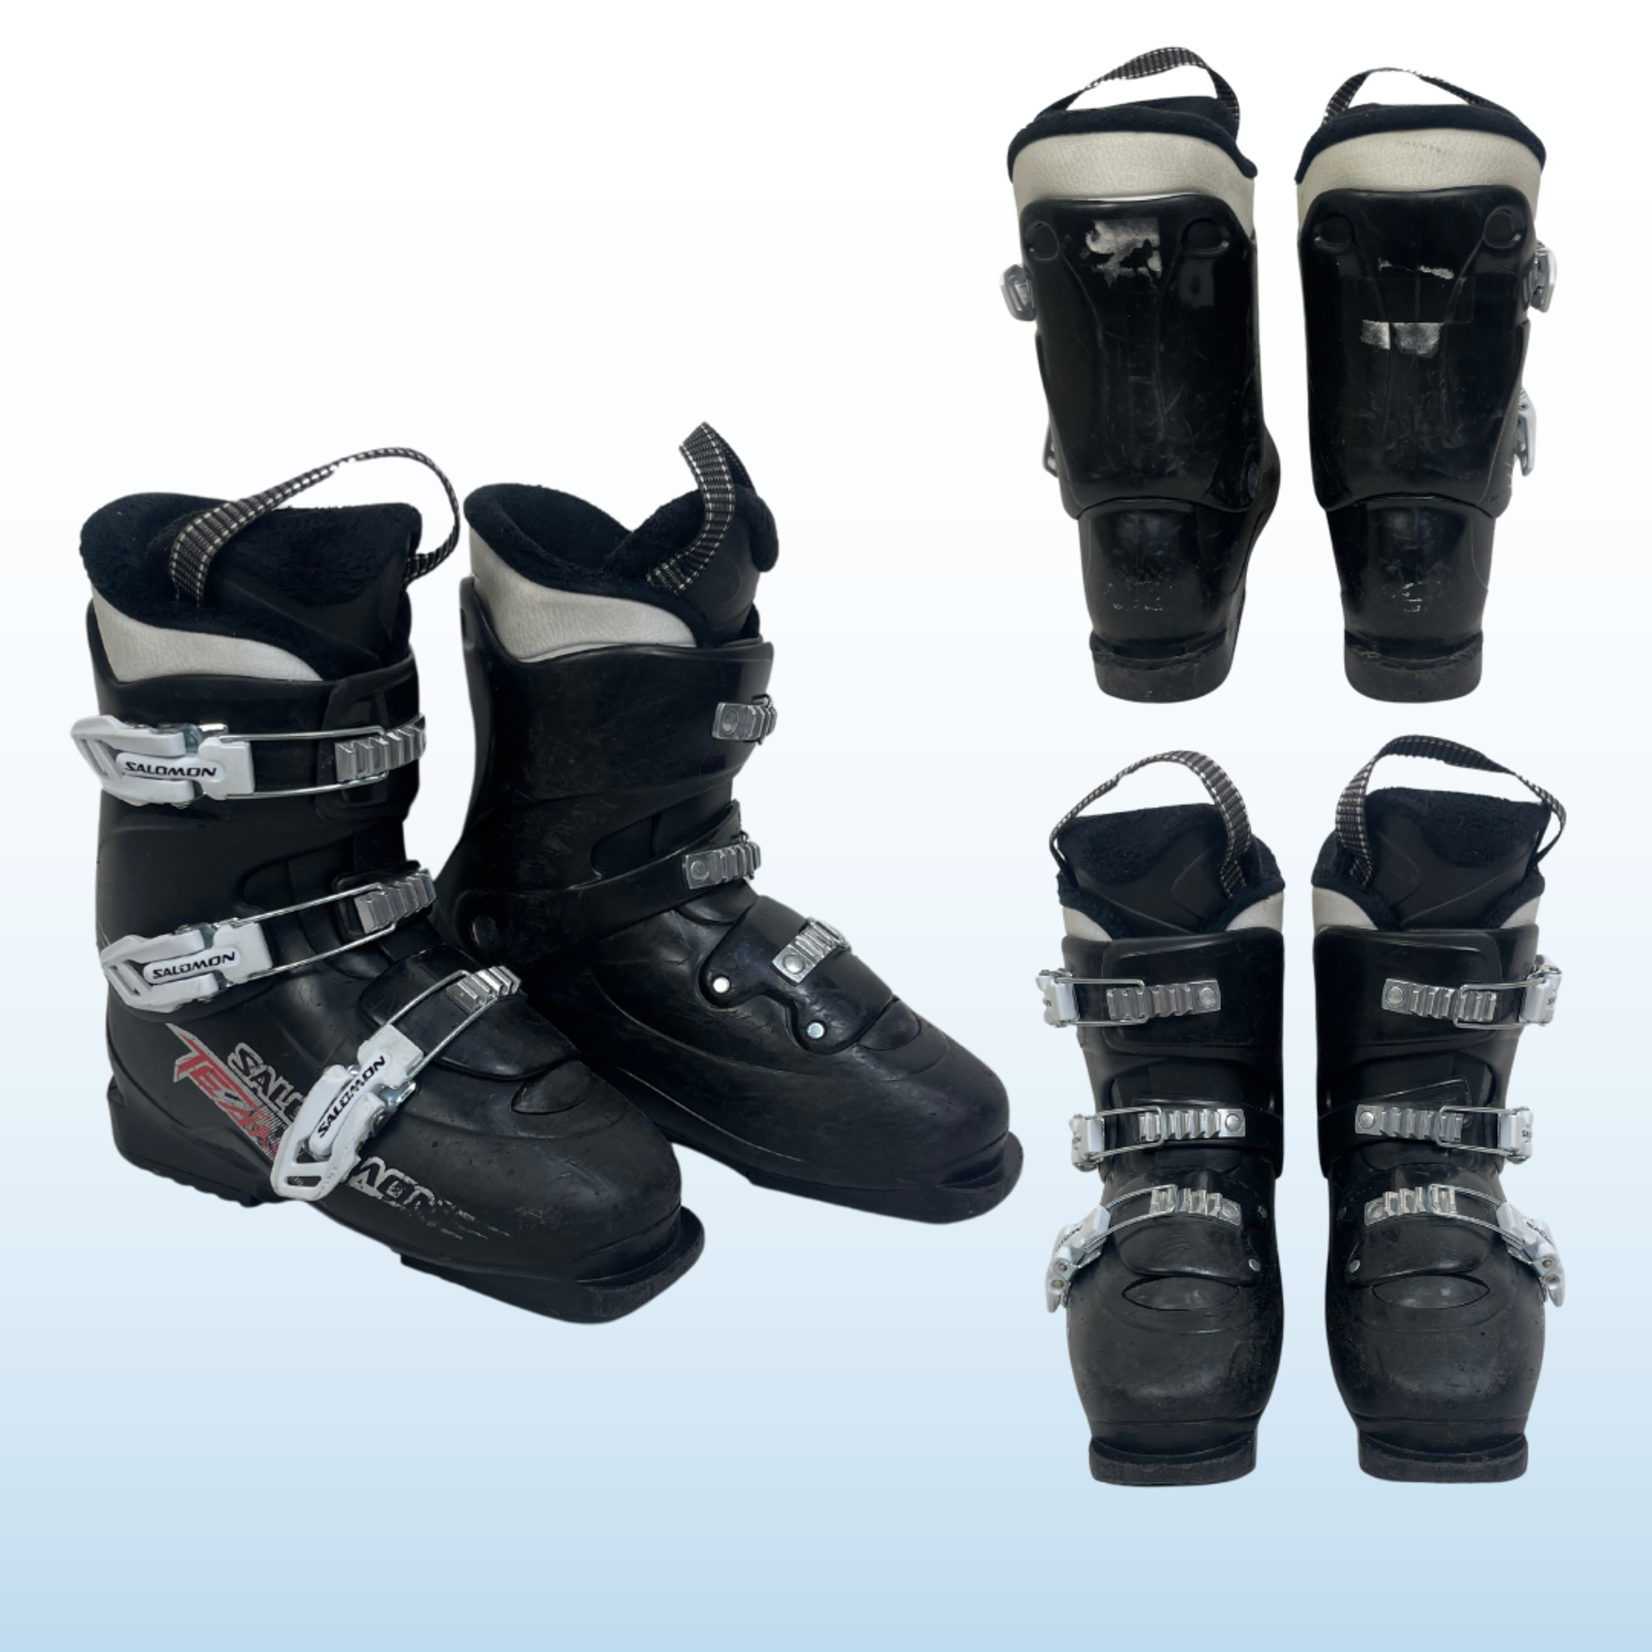 Nordica Nordica Firearrow Team T3 Kids Ski Boots, Size 22.5